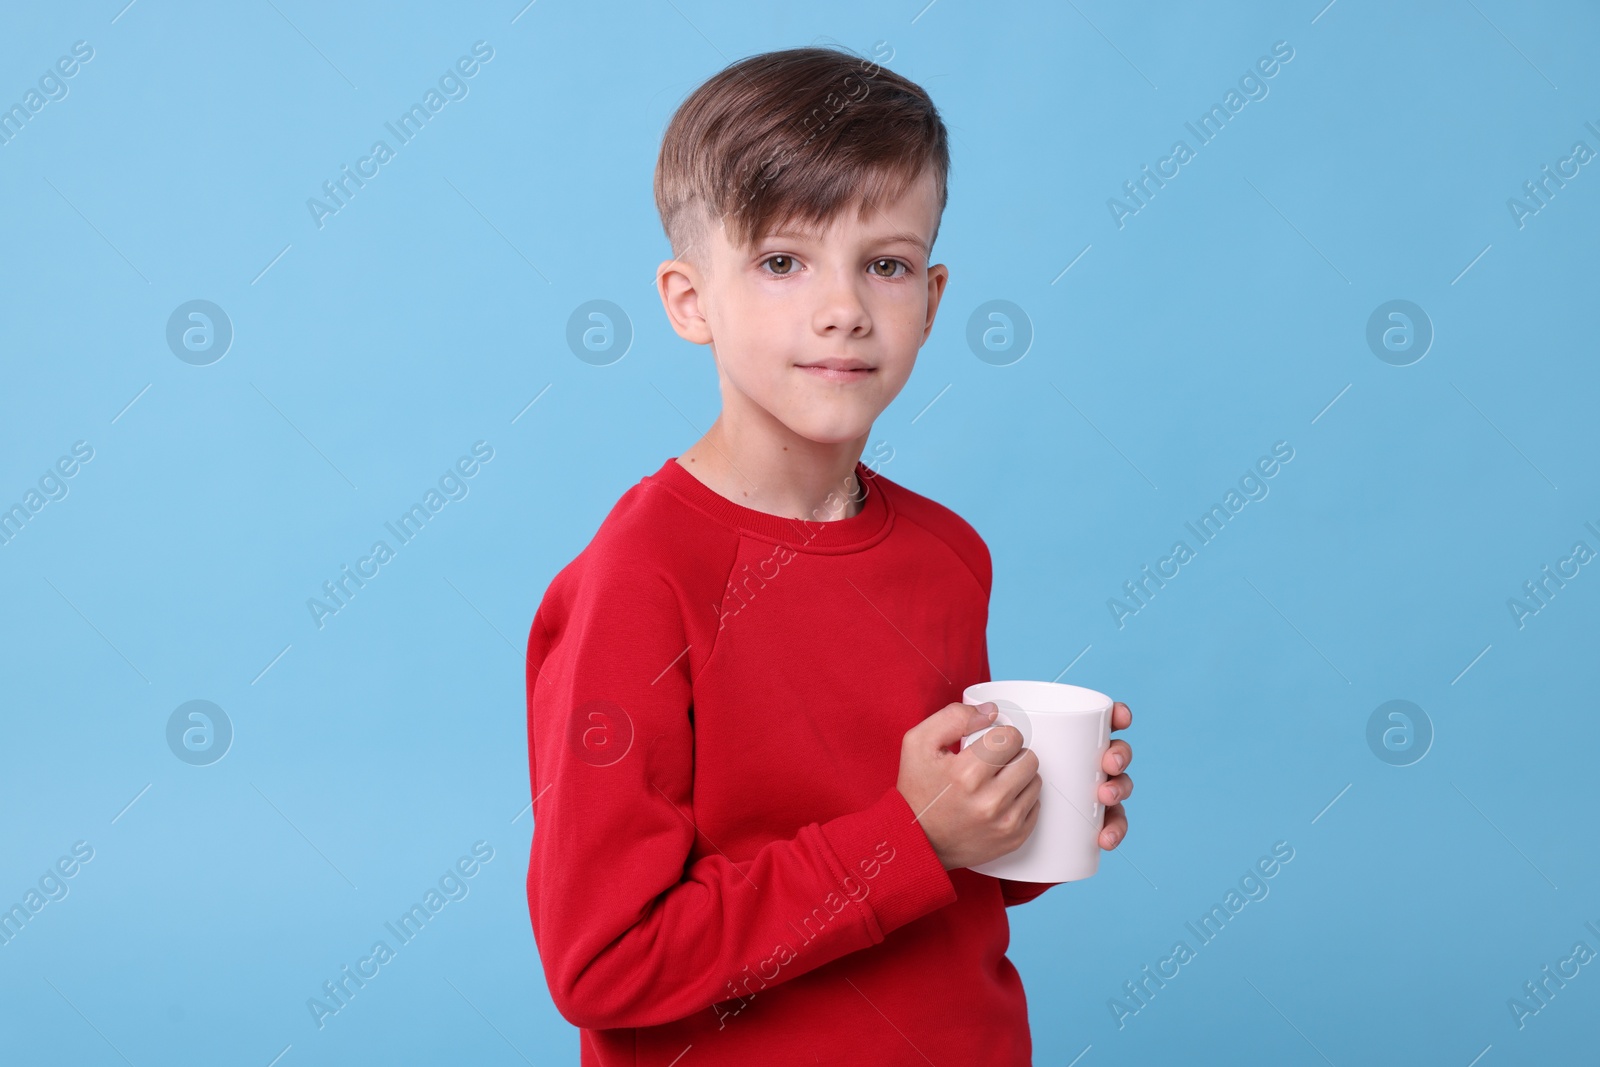 Photo of Cute boy with white ceramic mug on light blue background